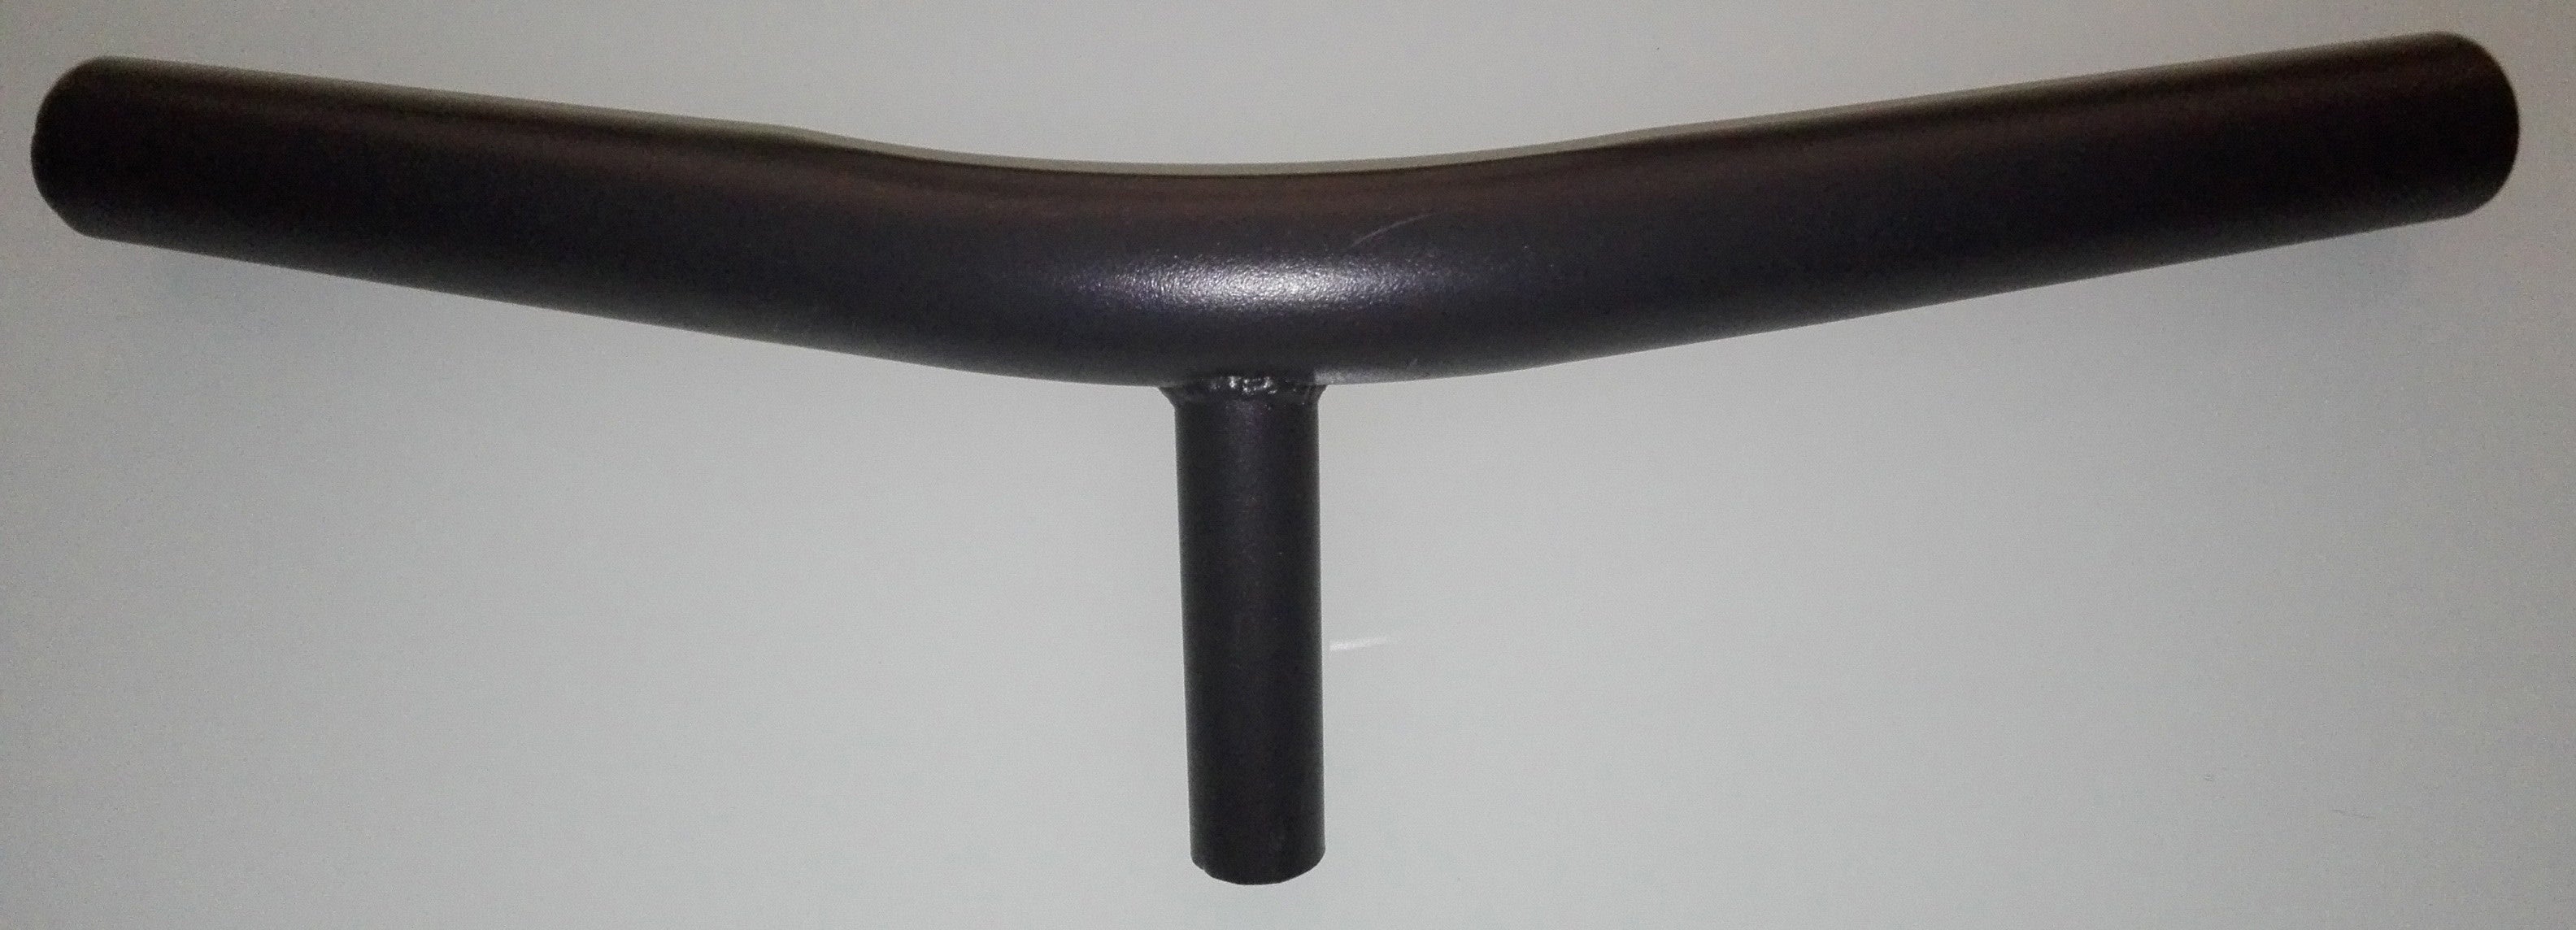 Zz-gazebo in acciaioonda(tubo dx4 pz1)